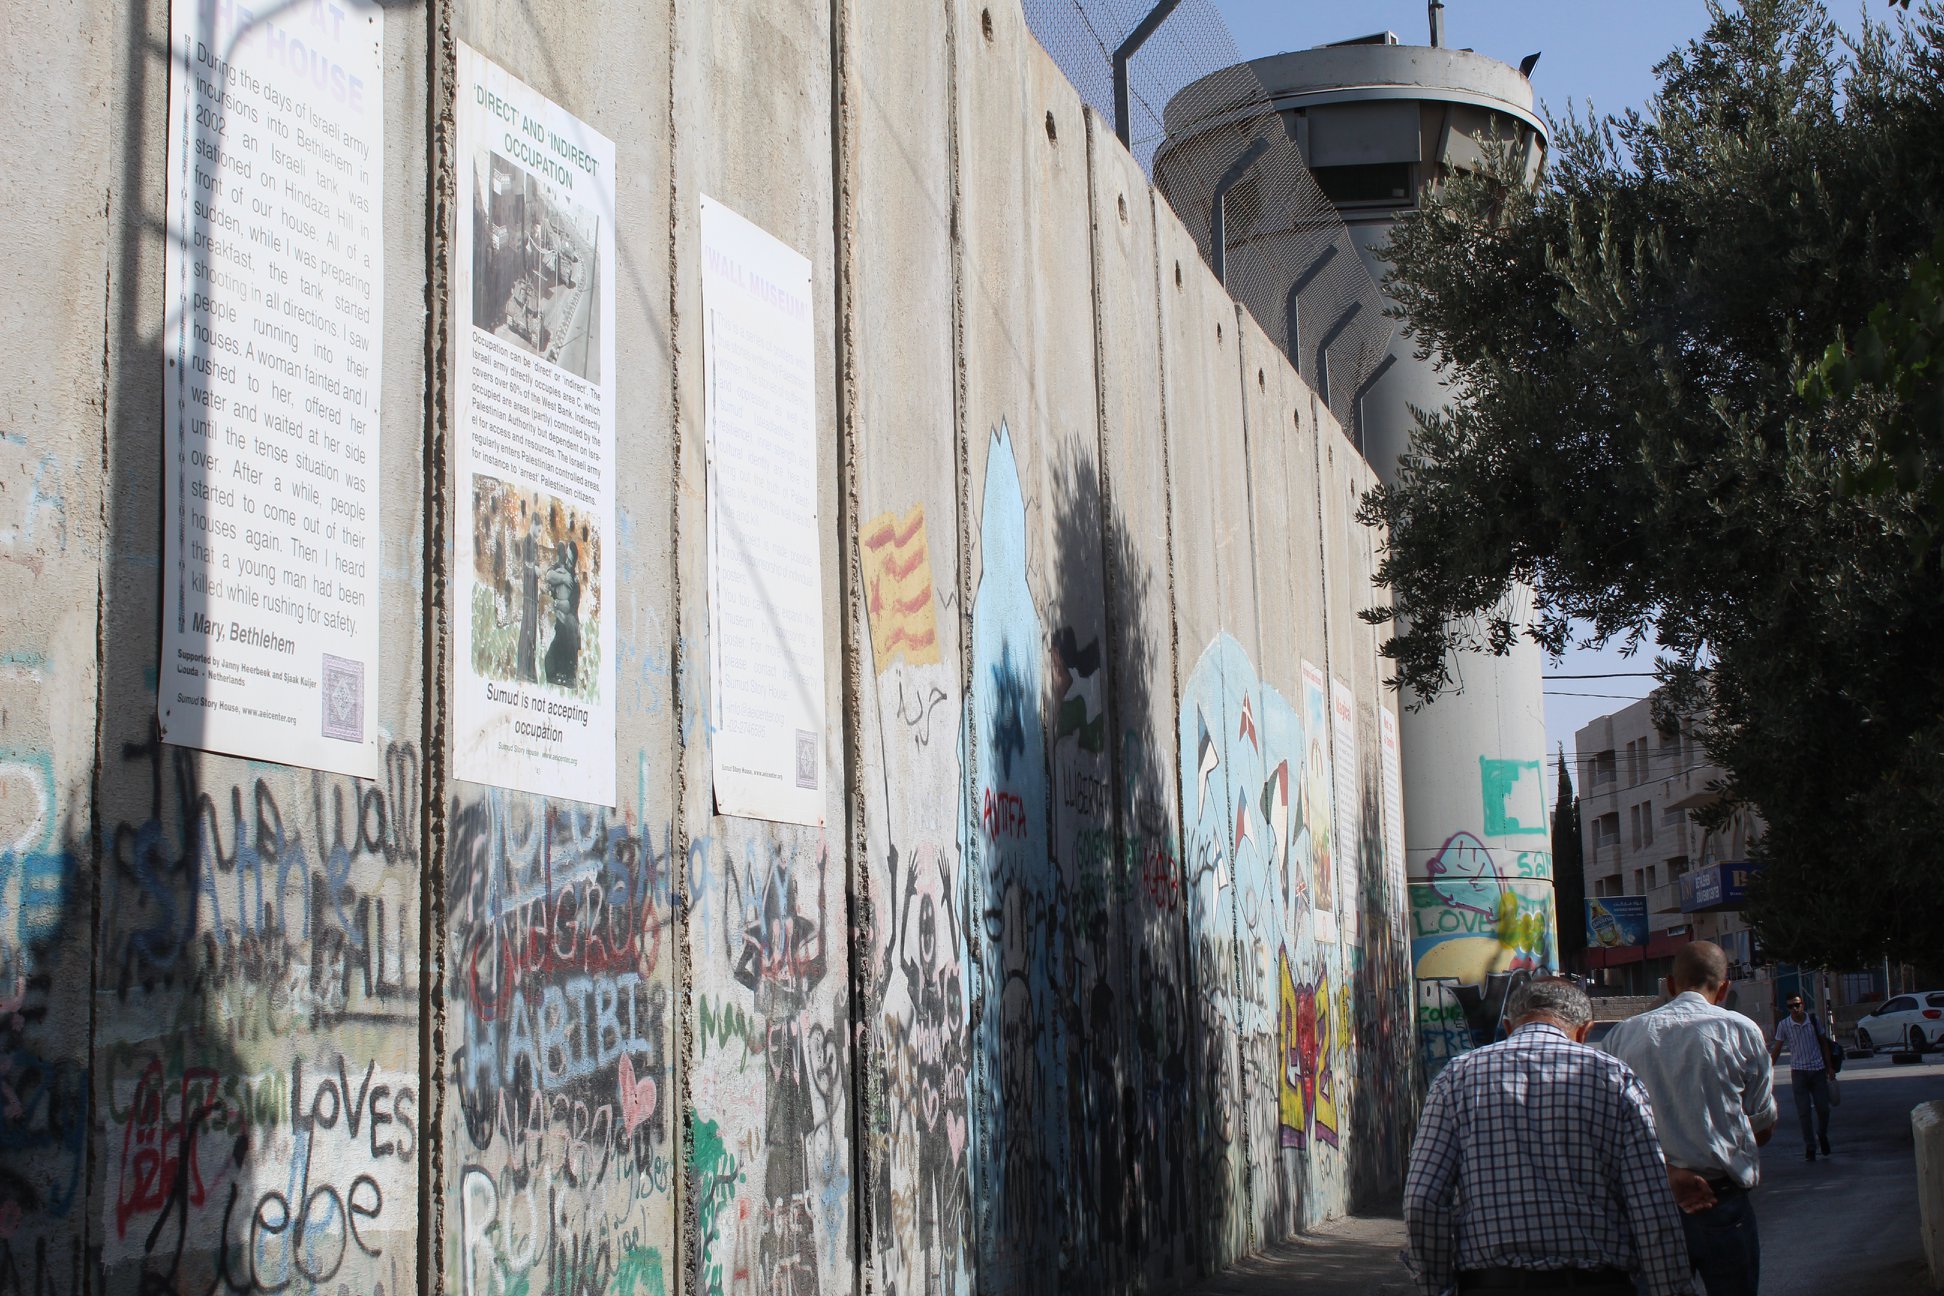 O muro de separação construído por Israel impede o acesso dos palestinos à sua capital, Jerusalém. Na foto, vê-se o muro em Belém, Palestina. Foto: Julio Santos Filho/EAPPI